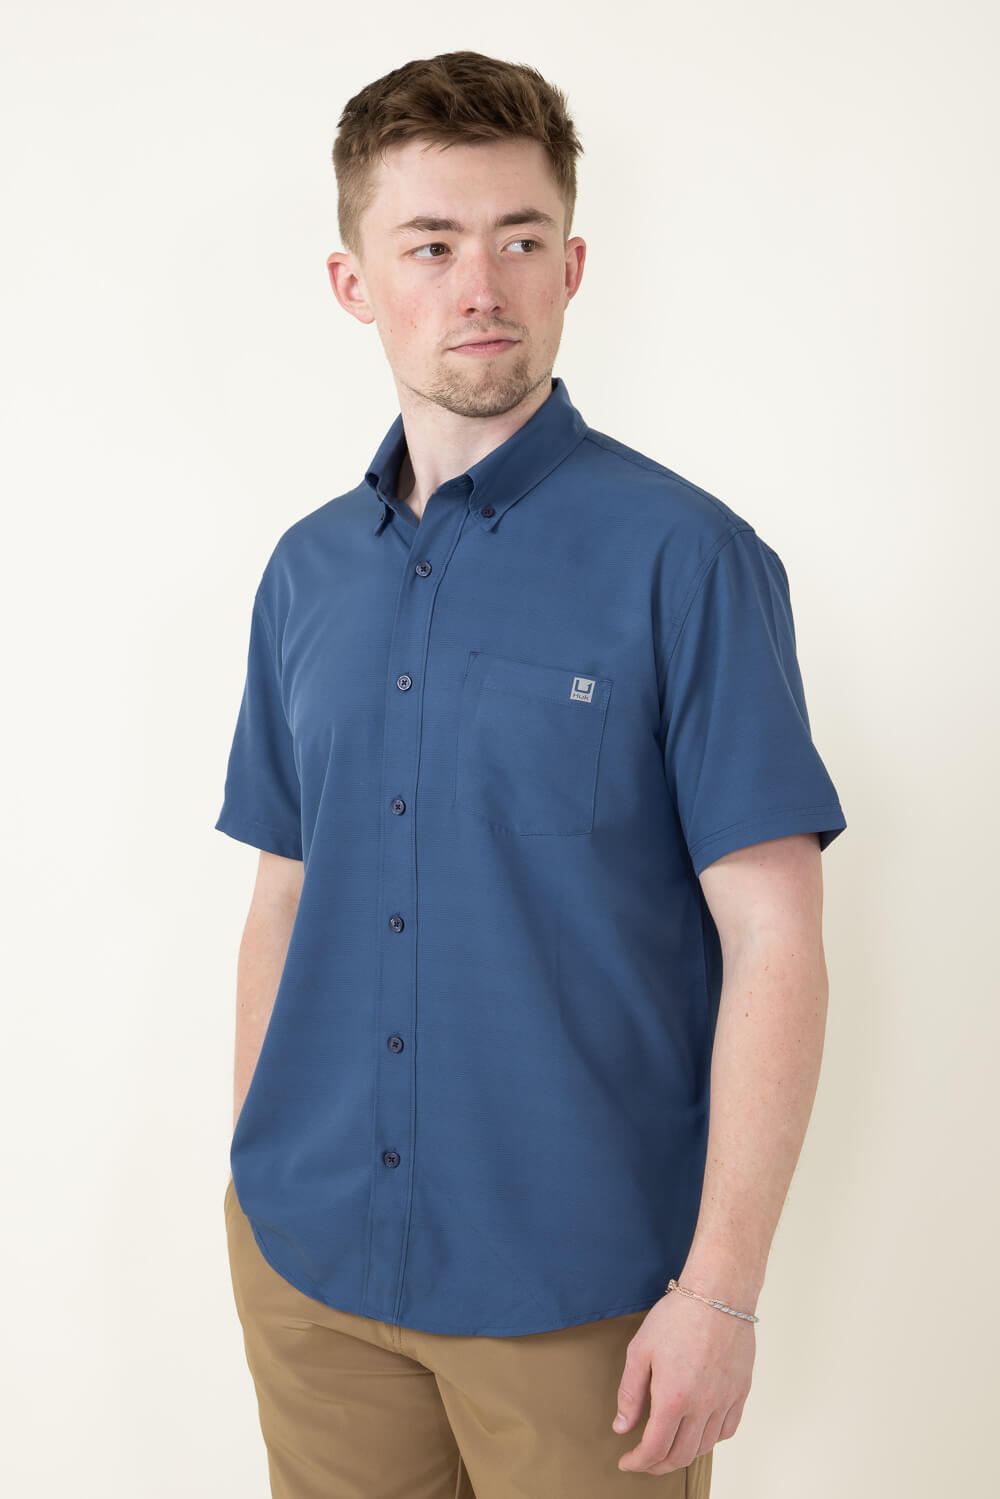 Huk Fishing Kona Cross Dye Stripe Button Down Shirt for Men in Blue